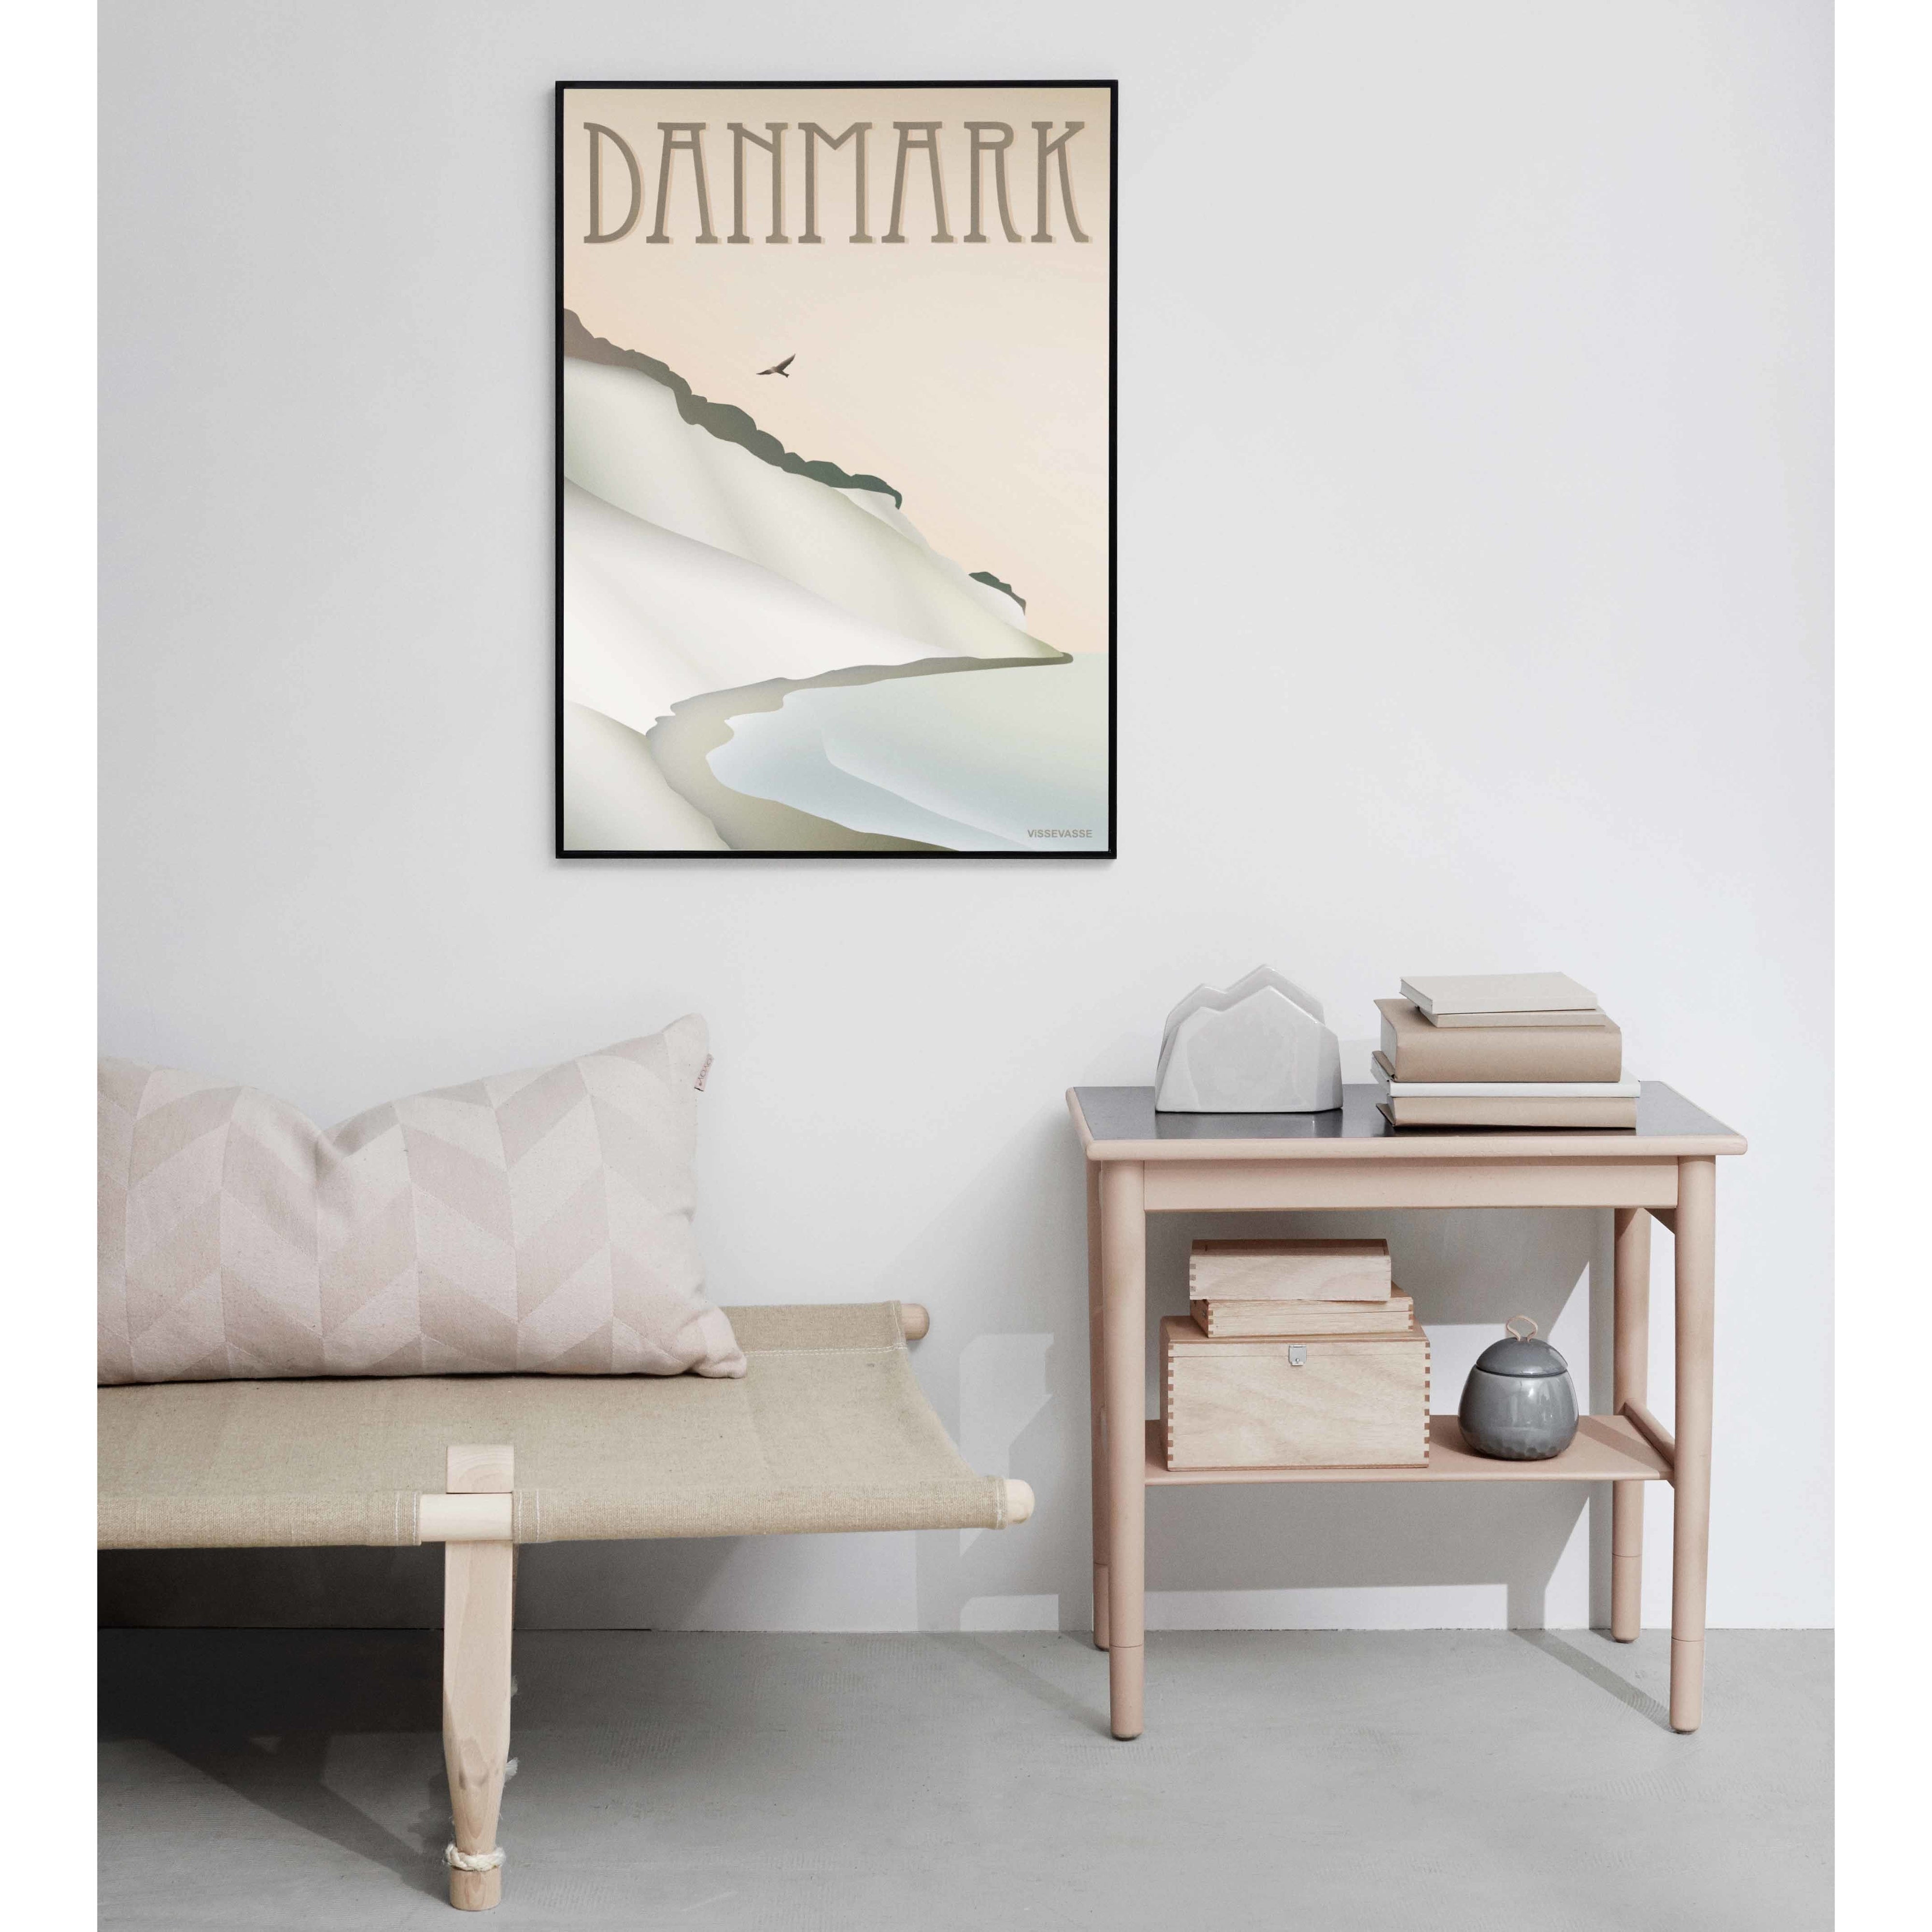 Vissevasse Dänemark Cliff Poster, 15 x21 cm